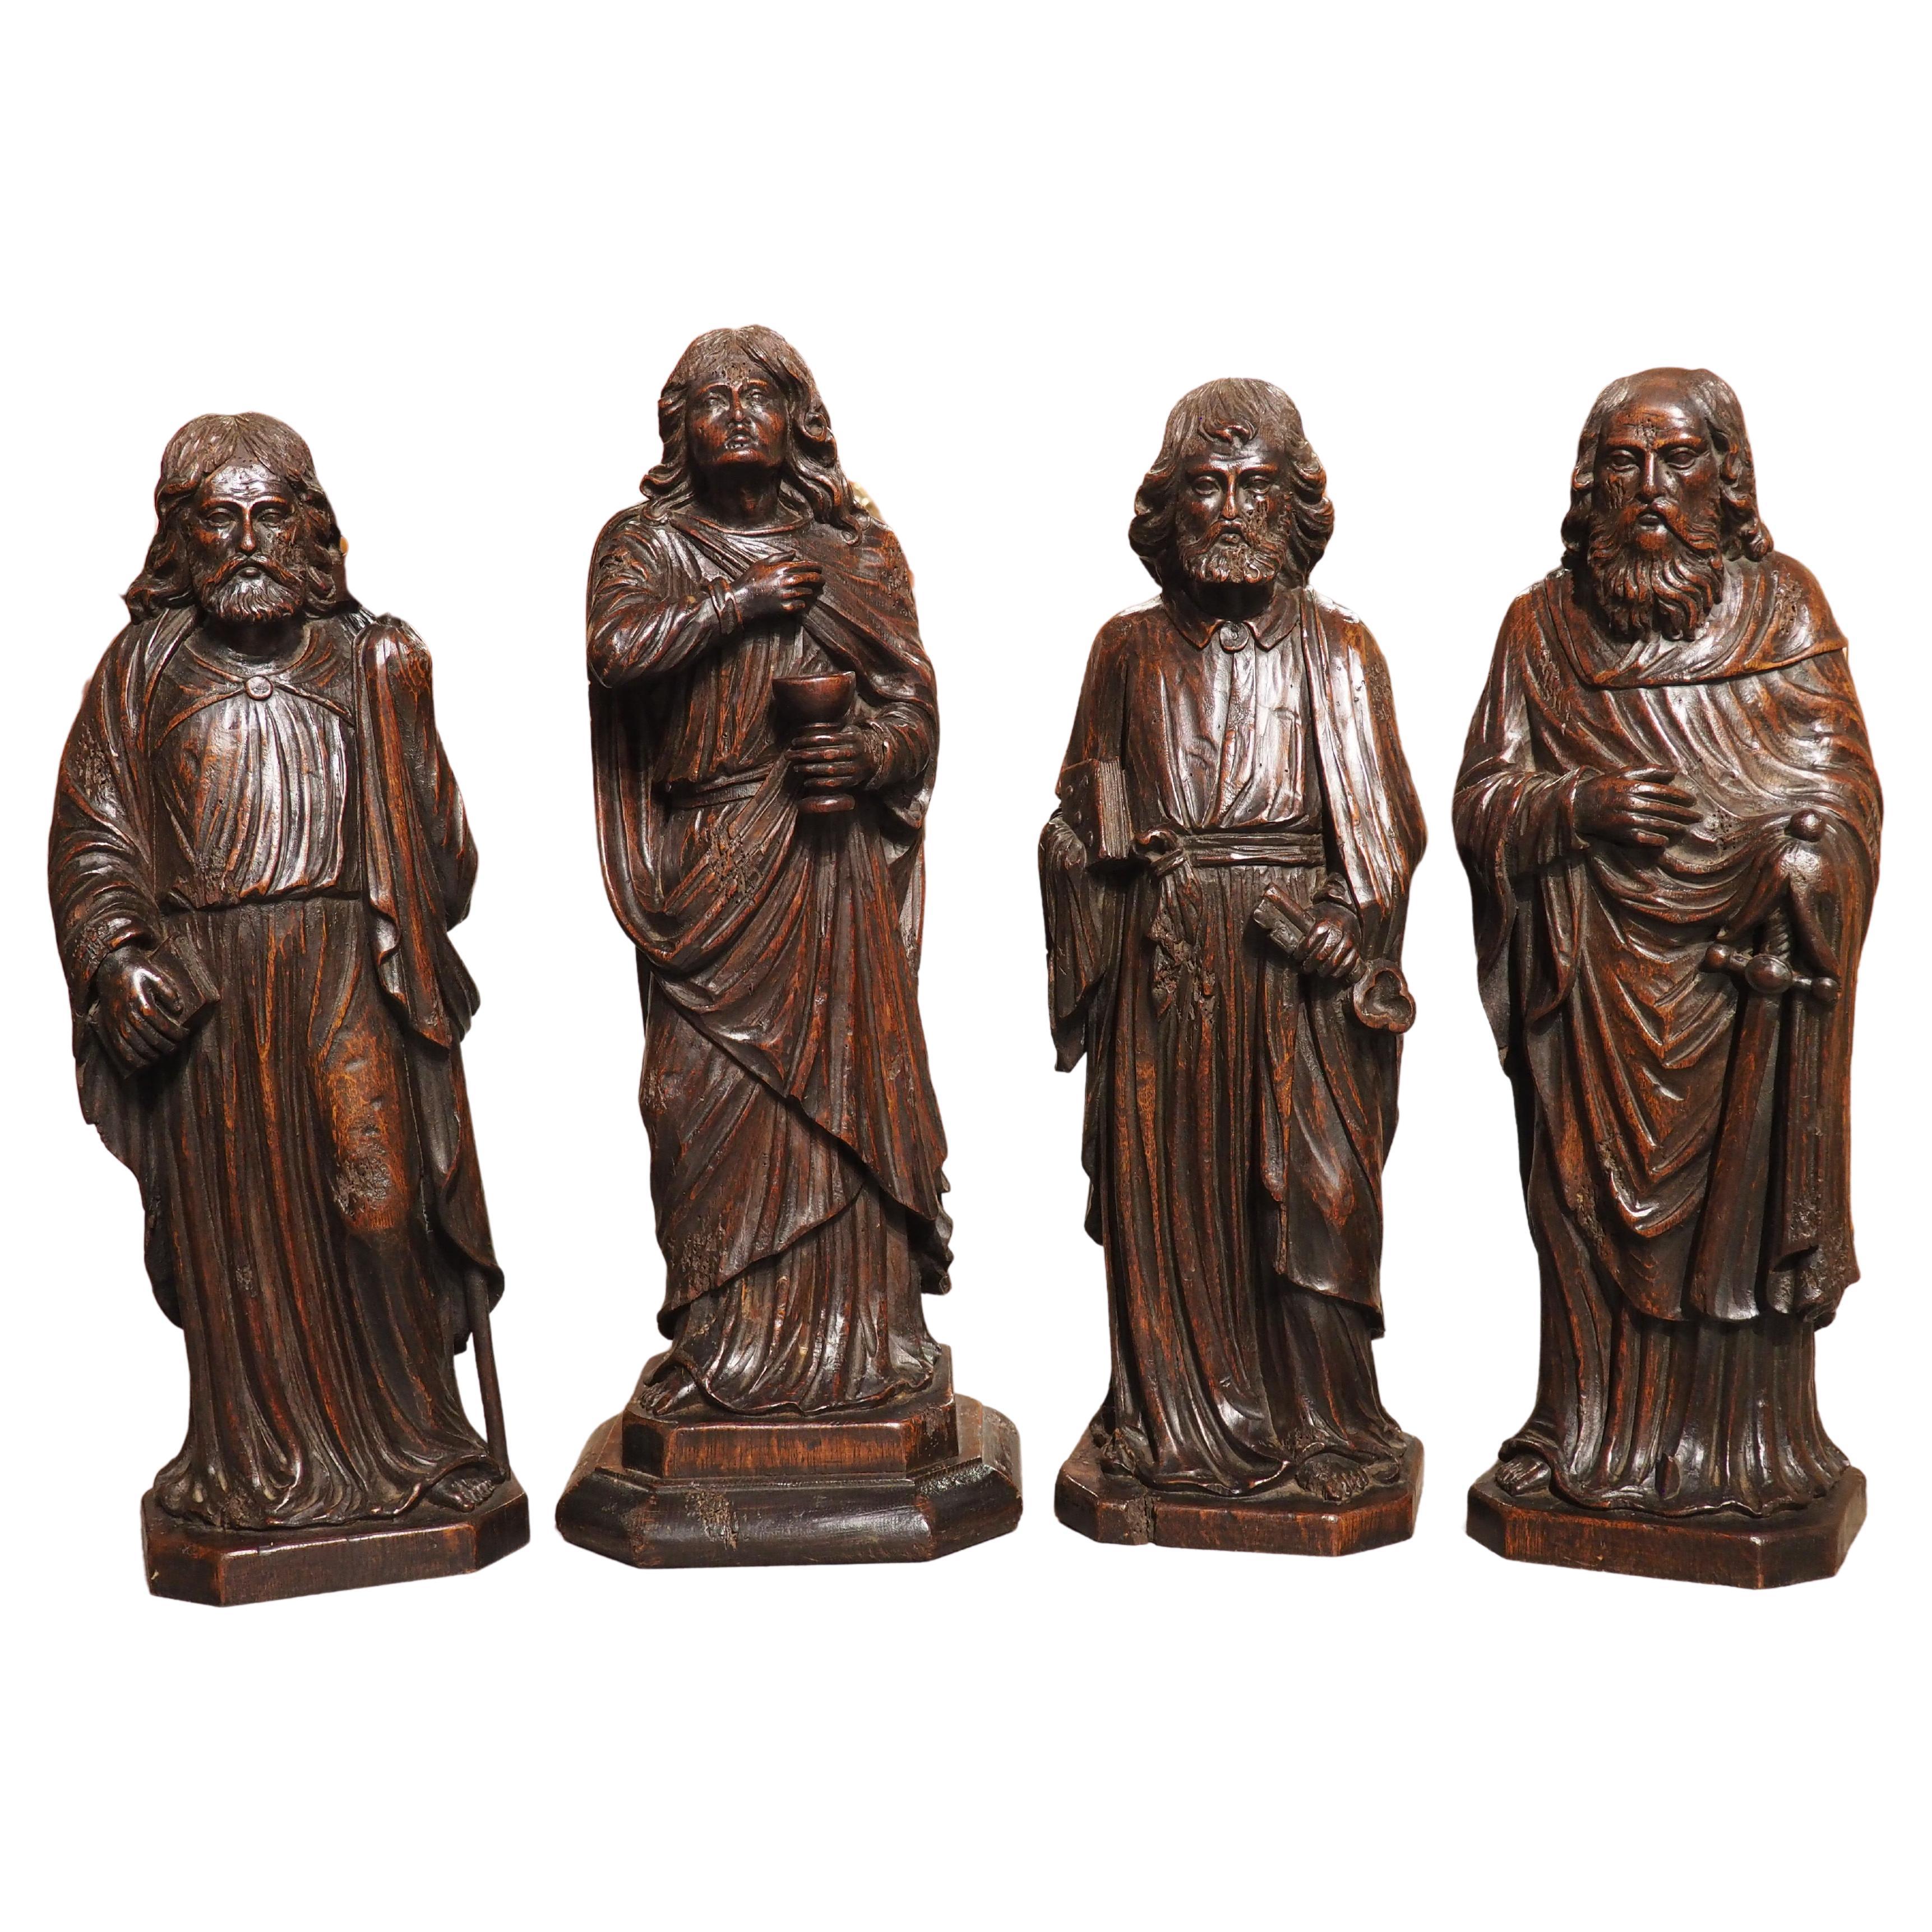 Sculptures en chêne sculptées des Apostles, James, John, Peter et Paul, datant d'environ 1800